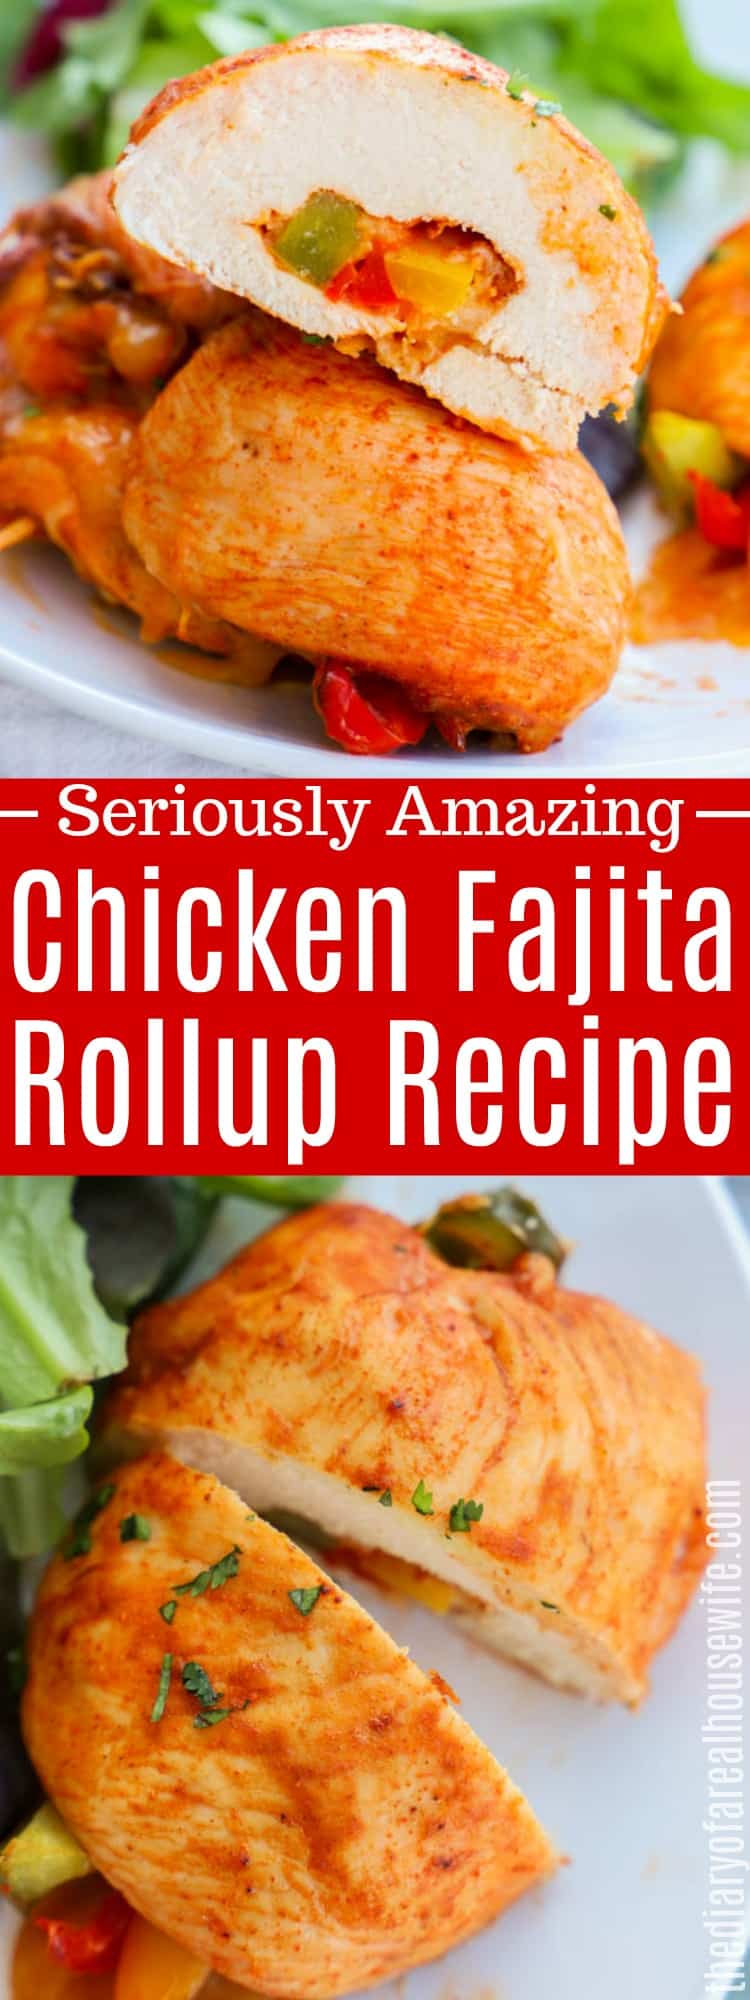 Chicken Fajita Rollup